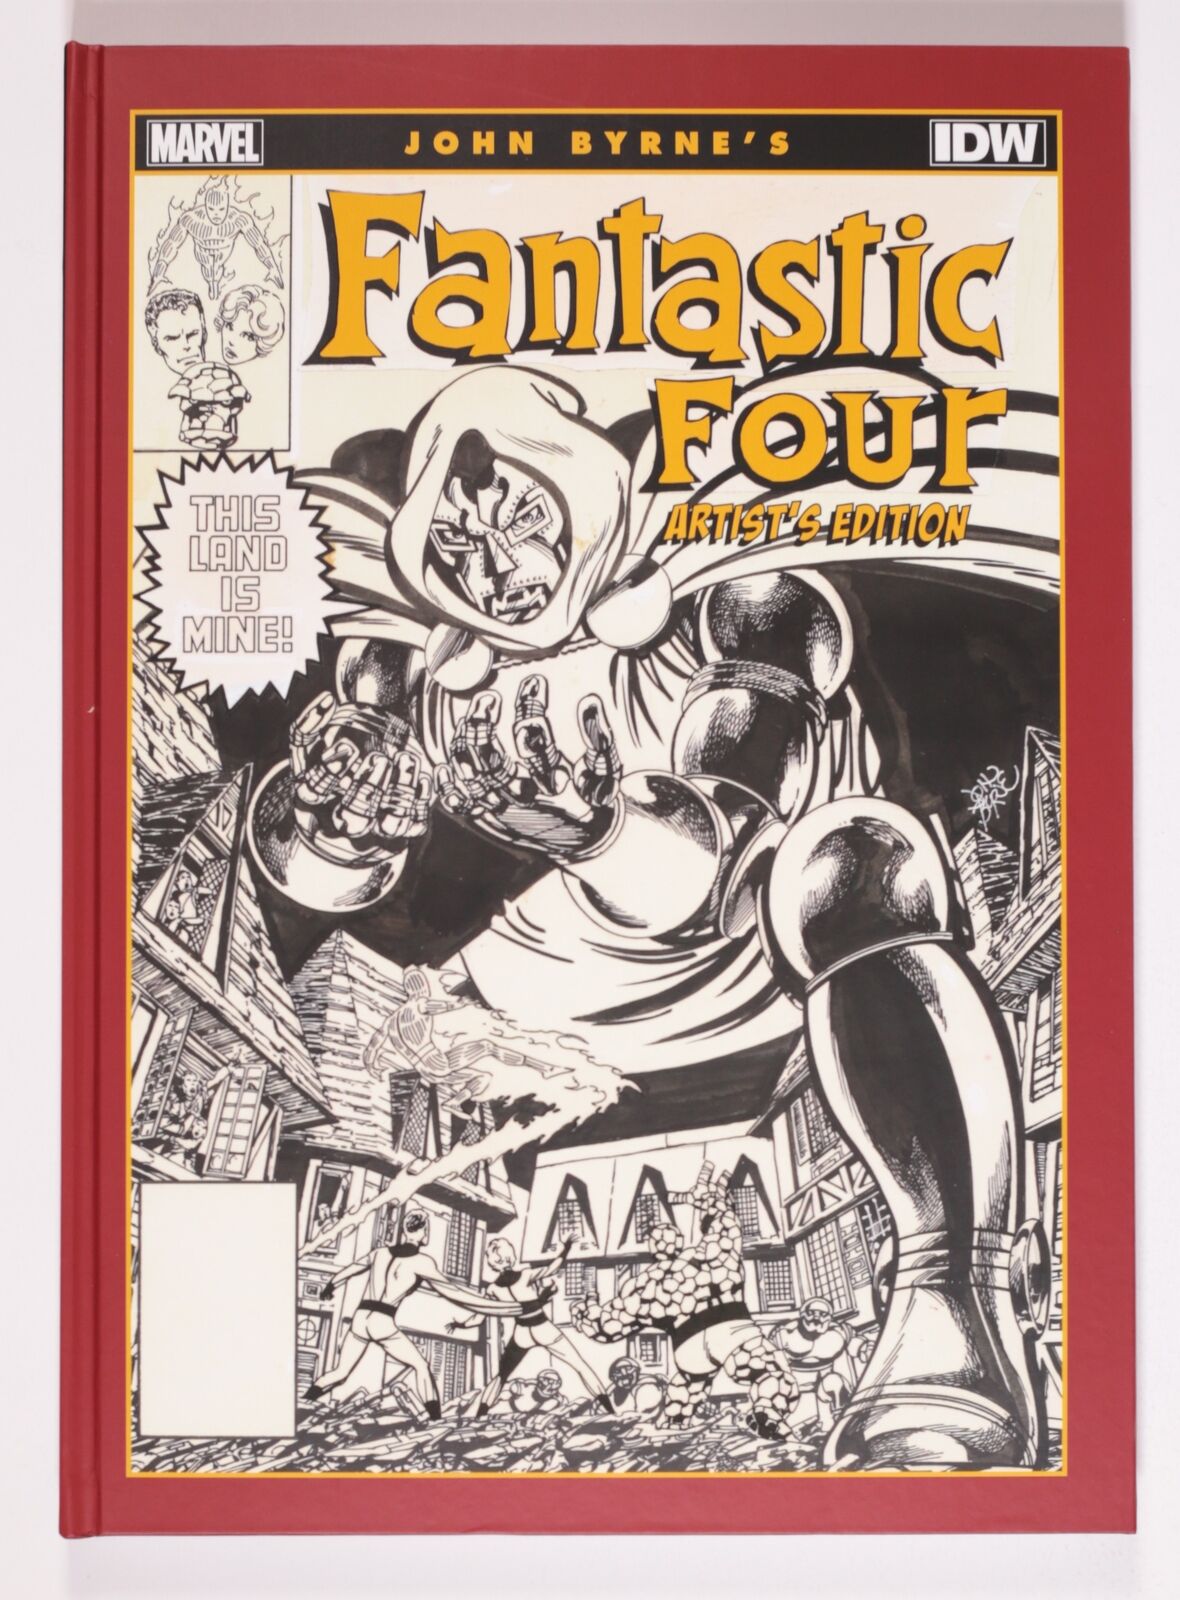 John Byrne's Fantastic Four HC Artist's Edition #1-1ST VF/NM 9.0 2013